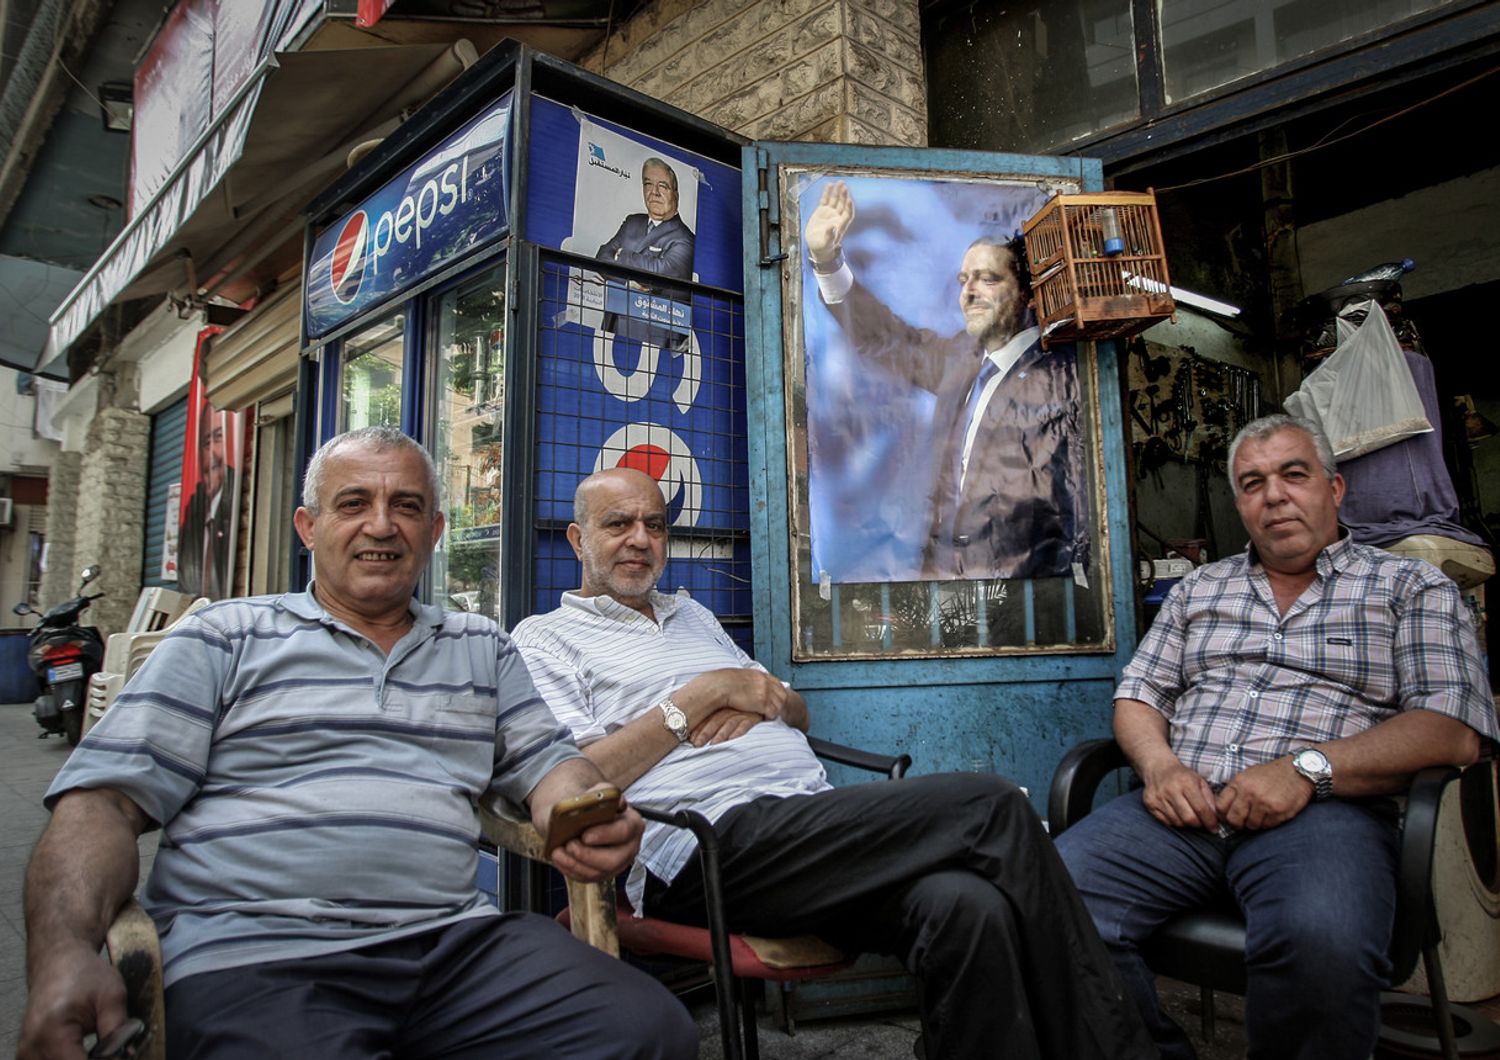 &nbsp;Tre libanesi di fronte a un poster elettorale di Hariri